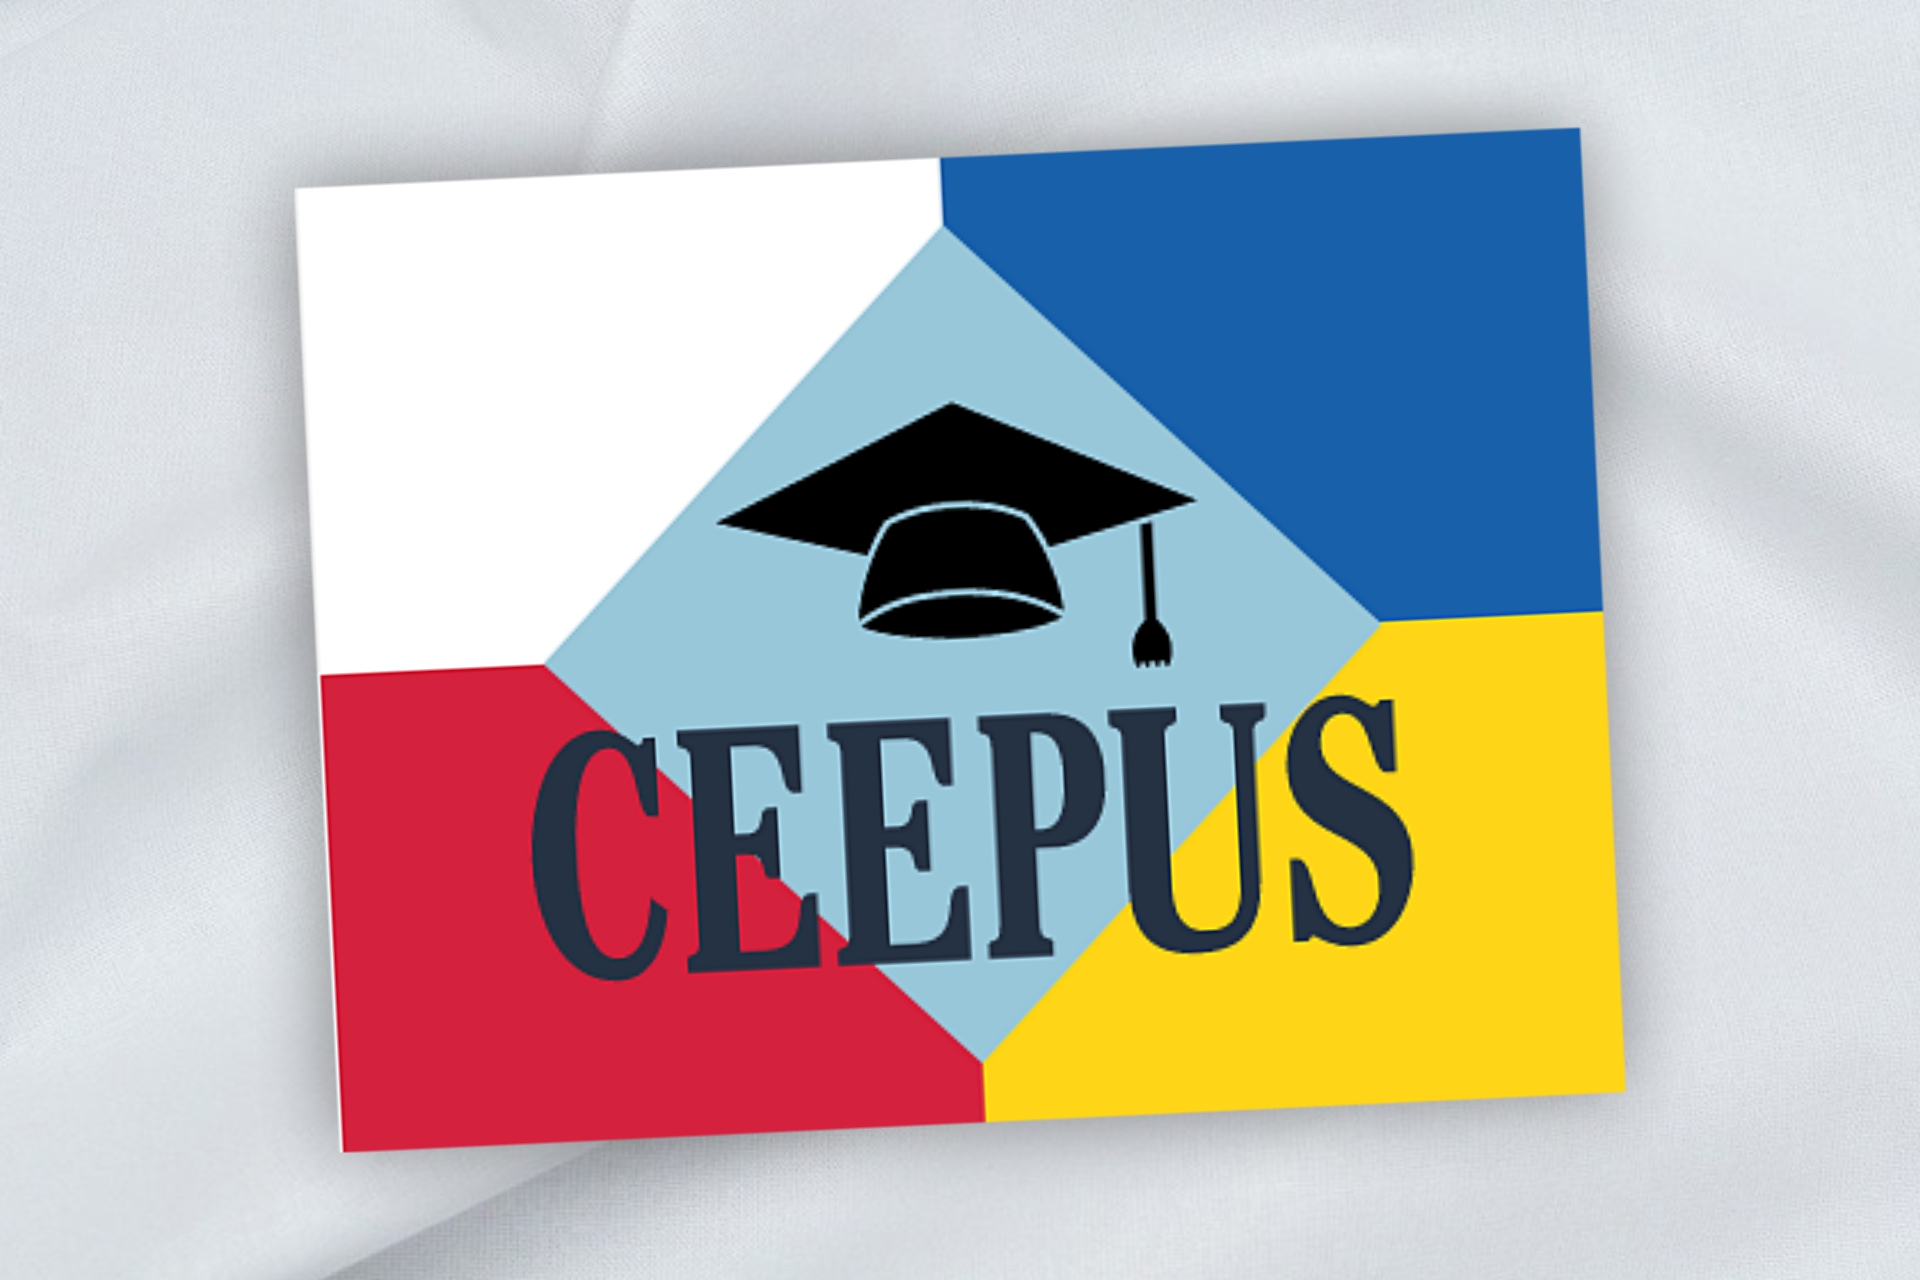 Ceepus UA